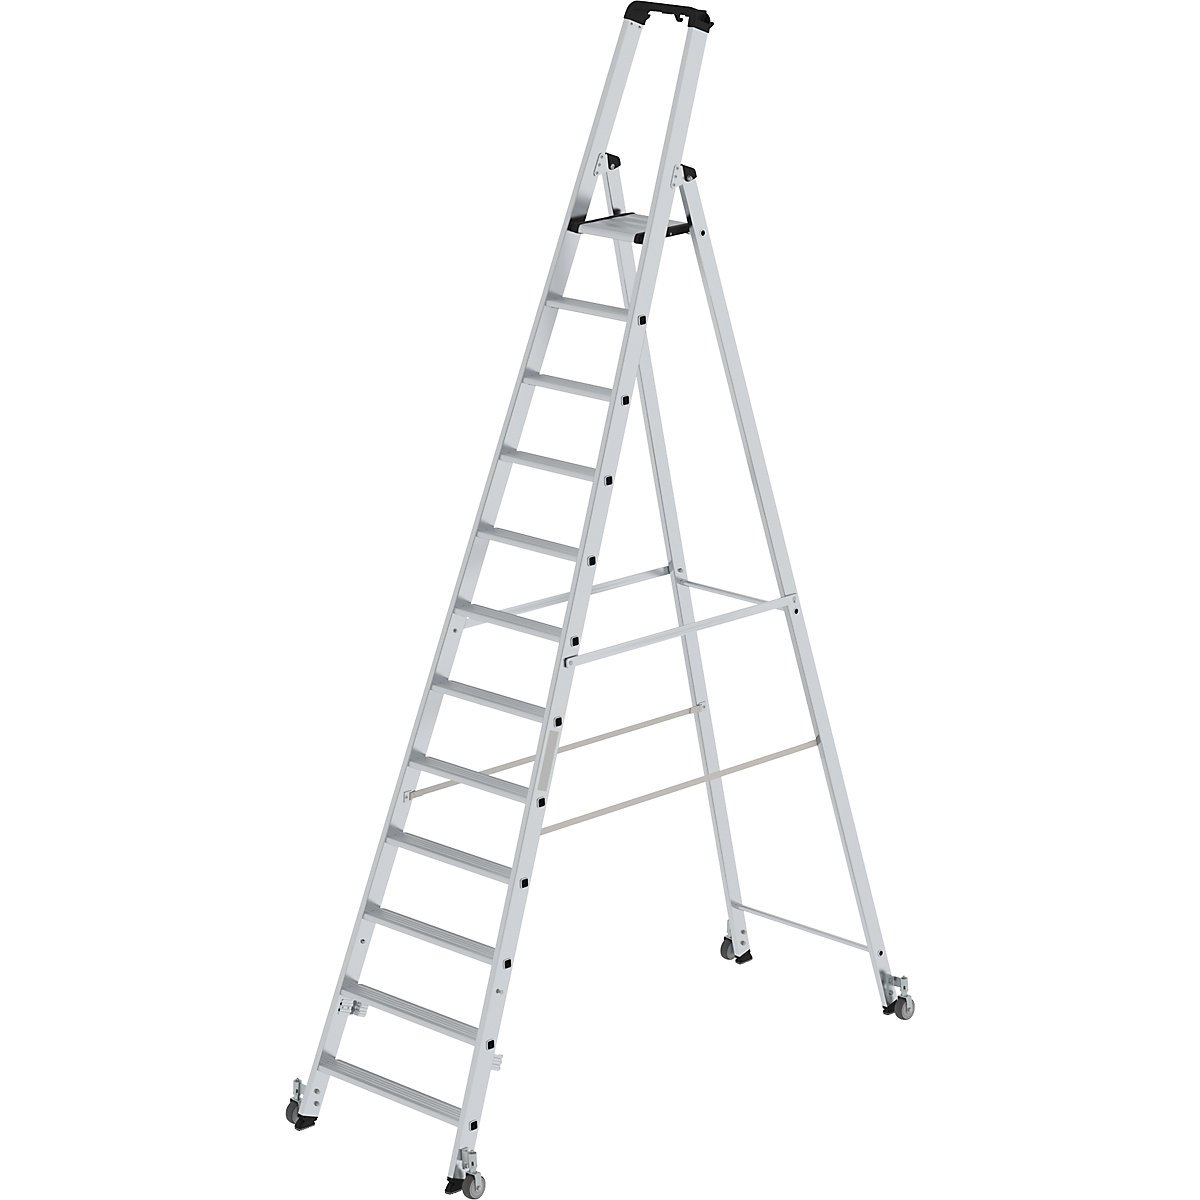 Step ladder, single sided – MUNK, mobile model, 12 steps, platform height 2810 mm-9